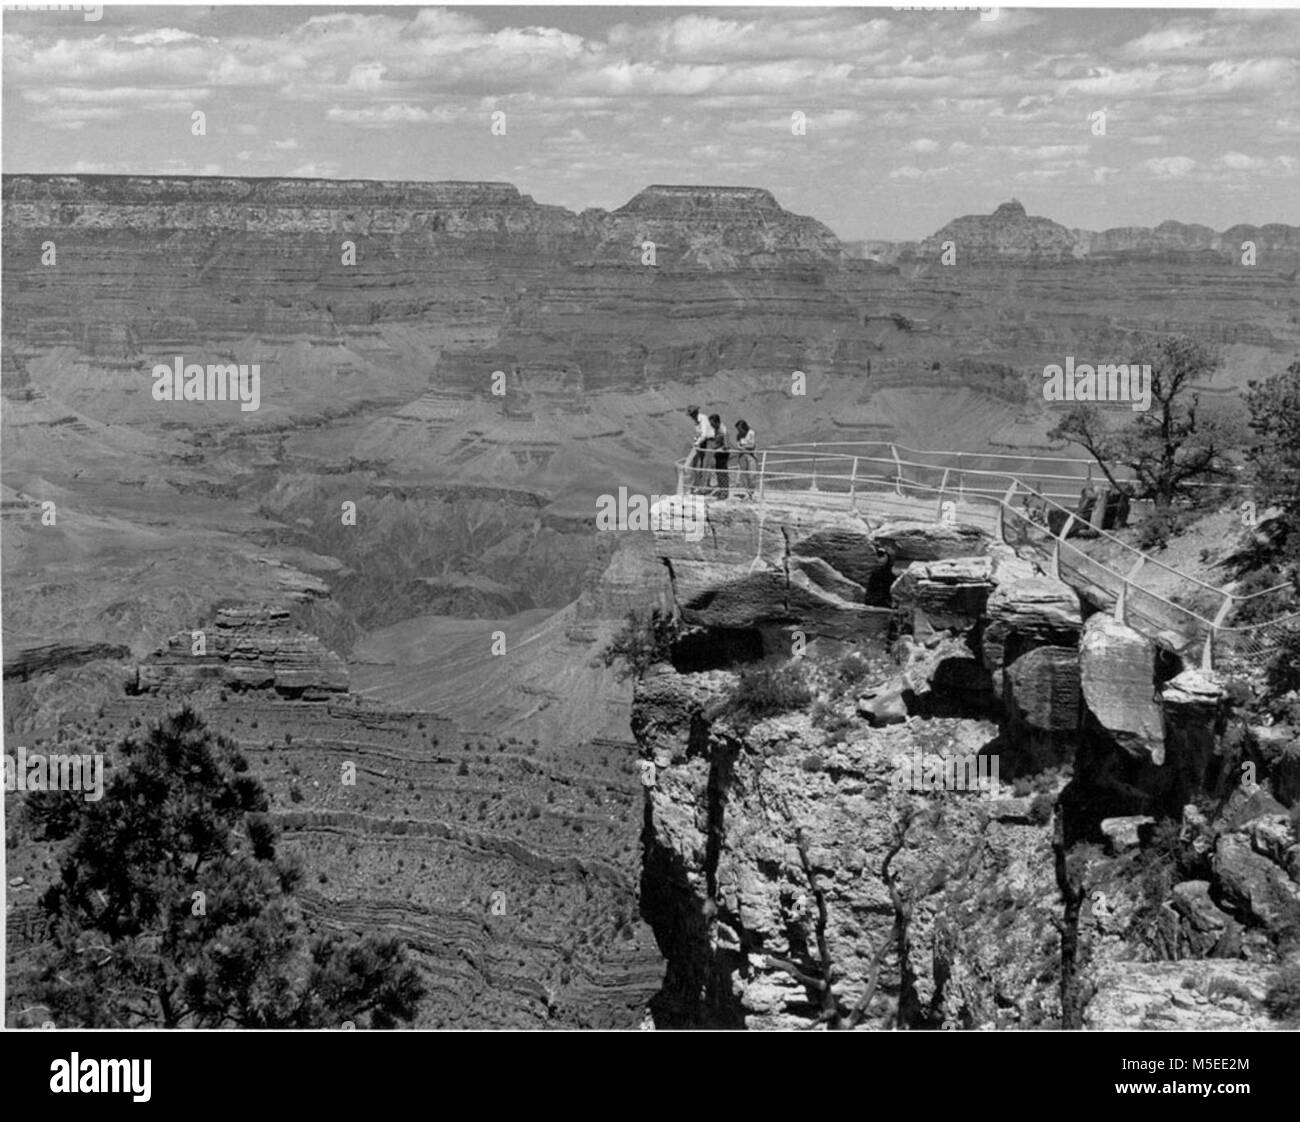 Grand Canyon Maer punto mirando al oriente de Mather Point en el trono de Wotan, templo de Vishnu, MOSTRANDO EL USO DE VISITANTES SOBRE EL PUNTO. CIRCA 1955. . Foto de stock